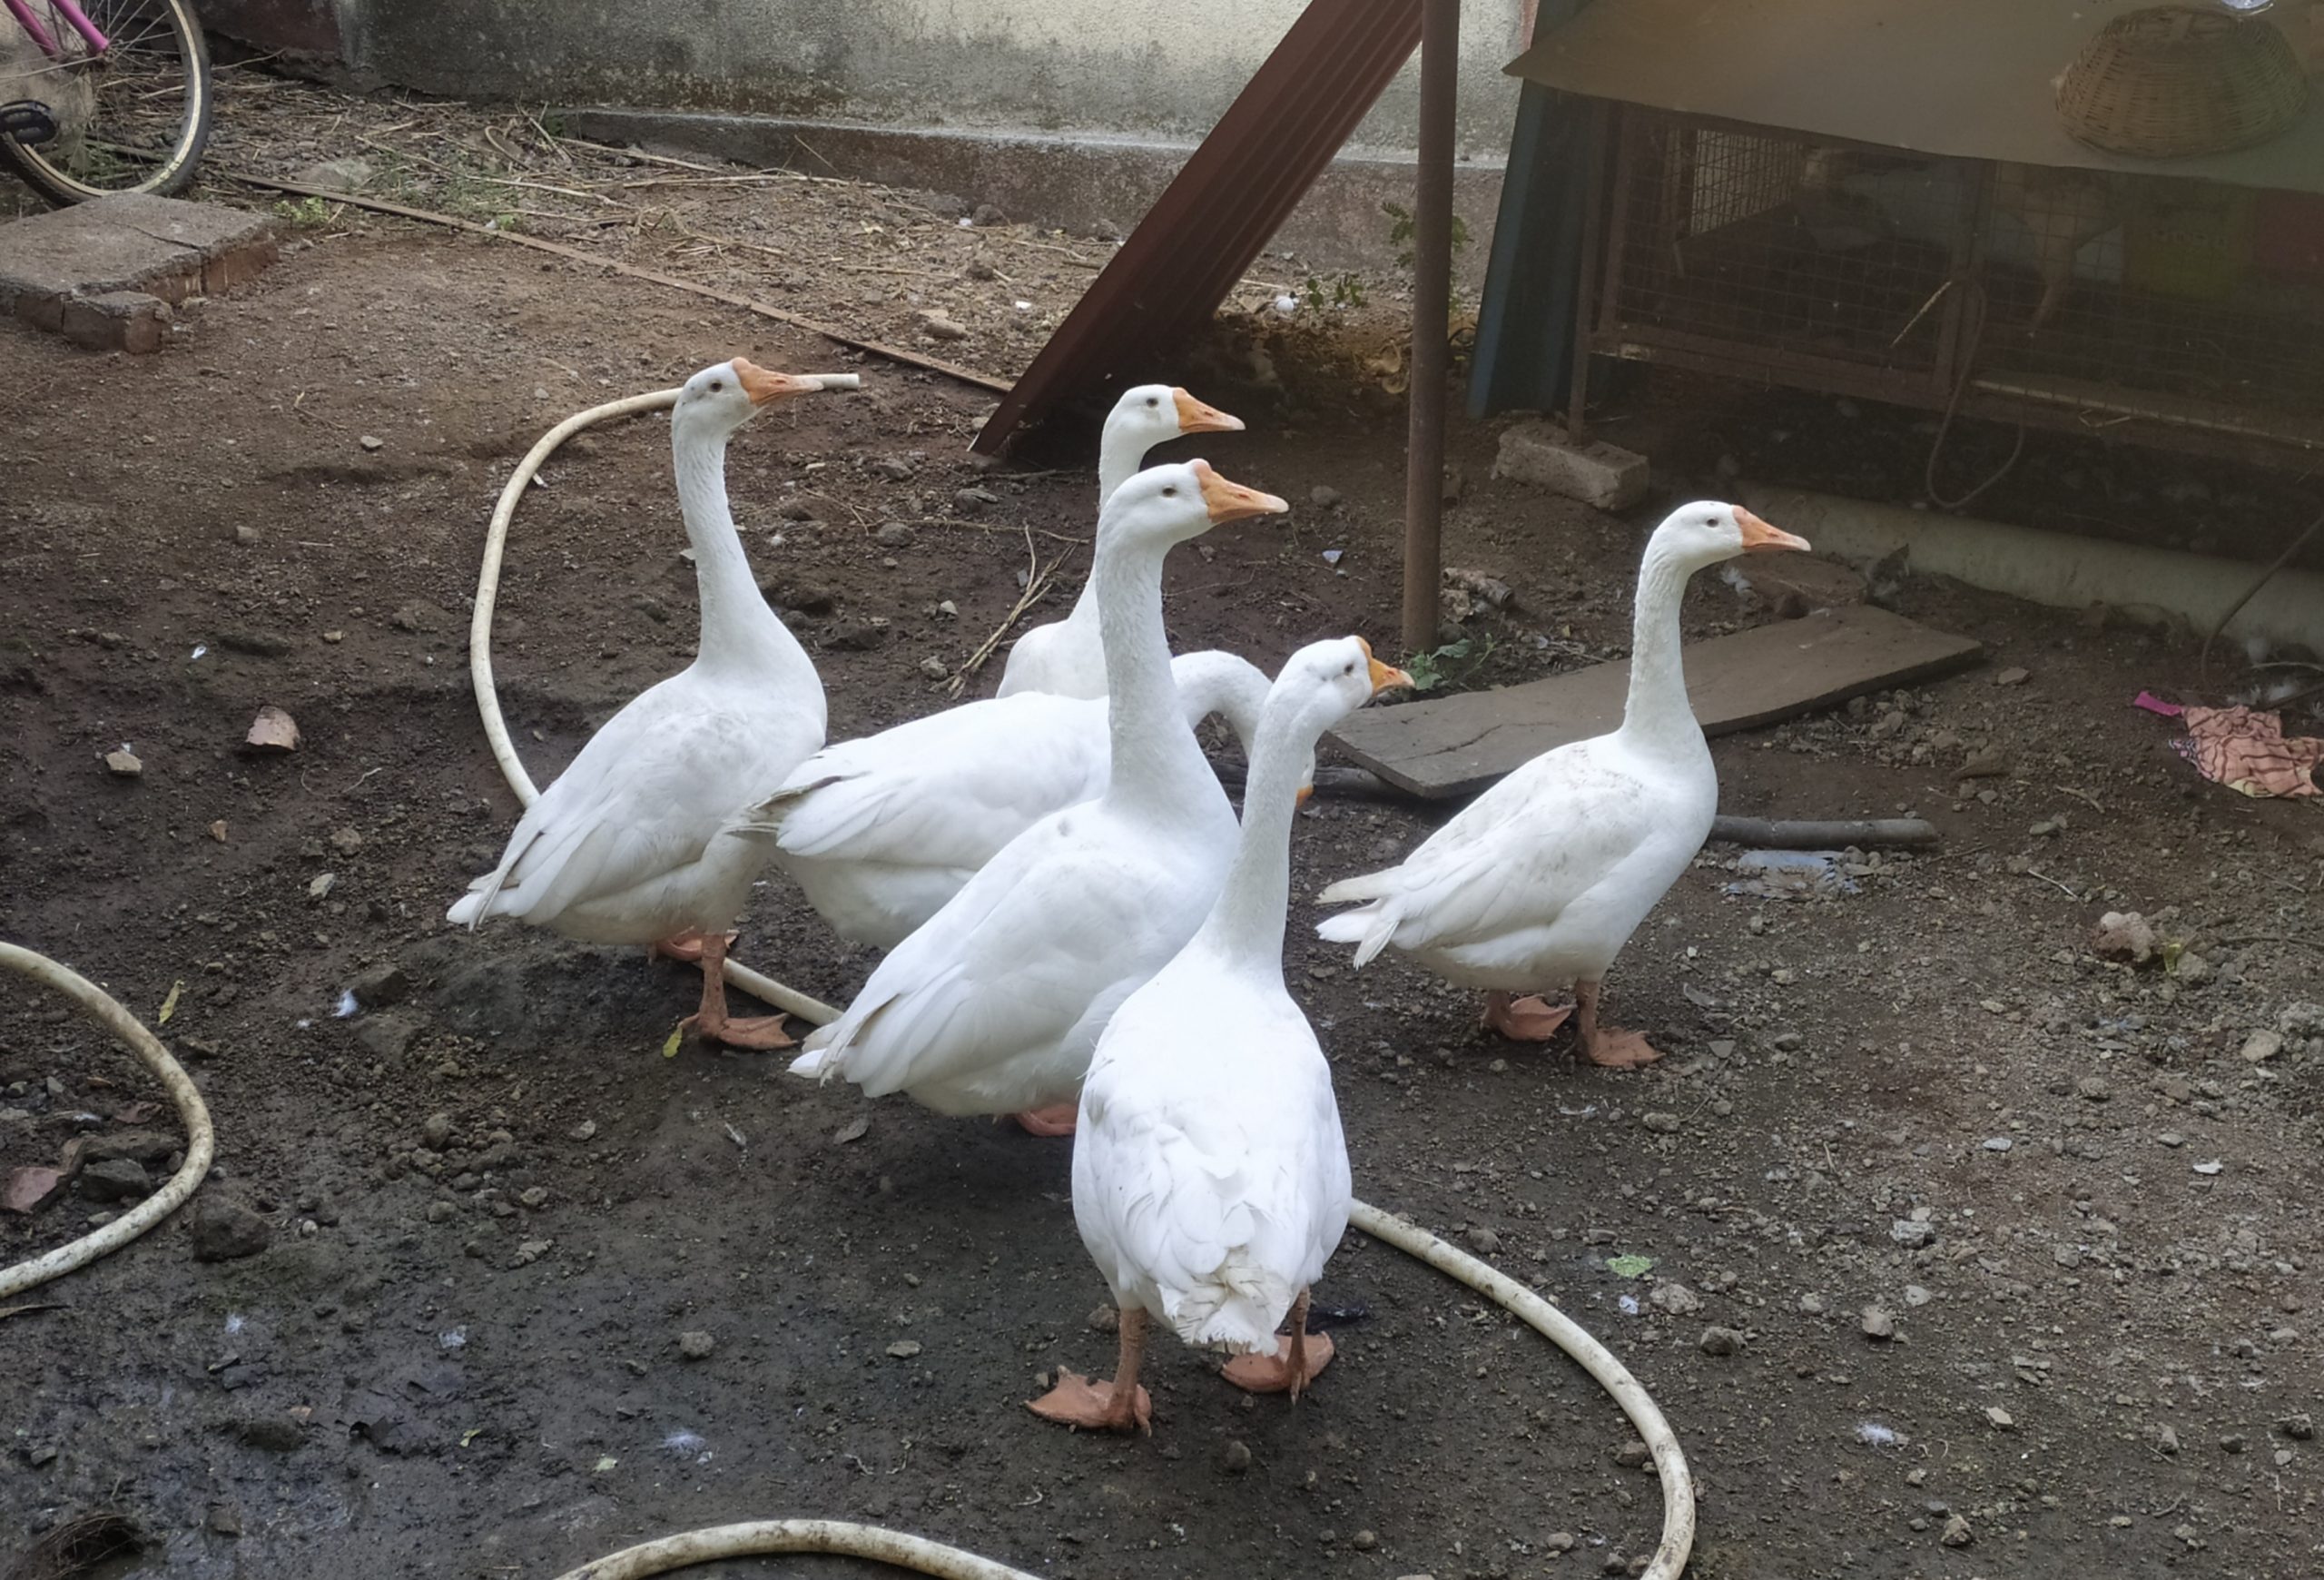 A flock of ducks